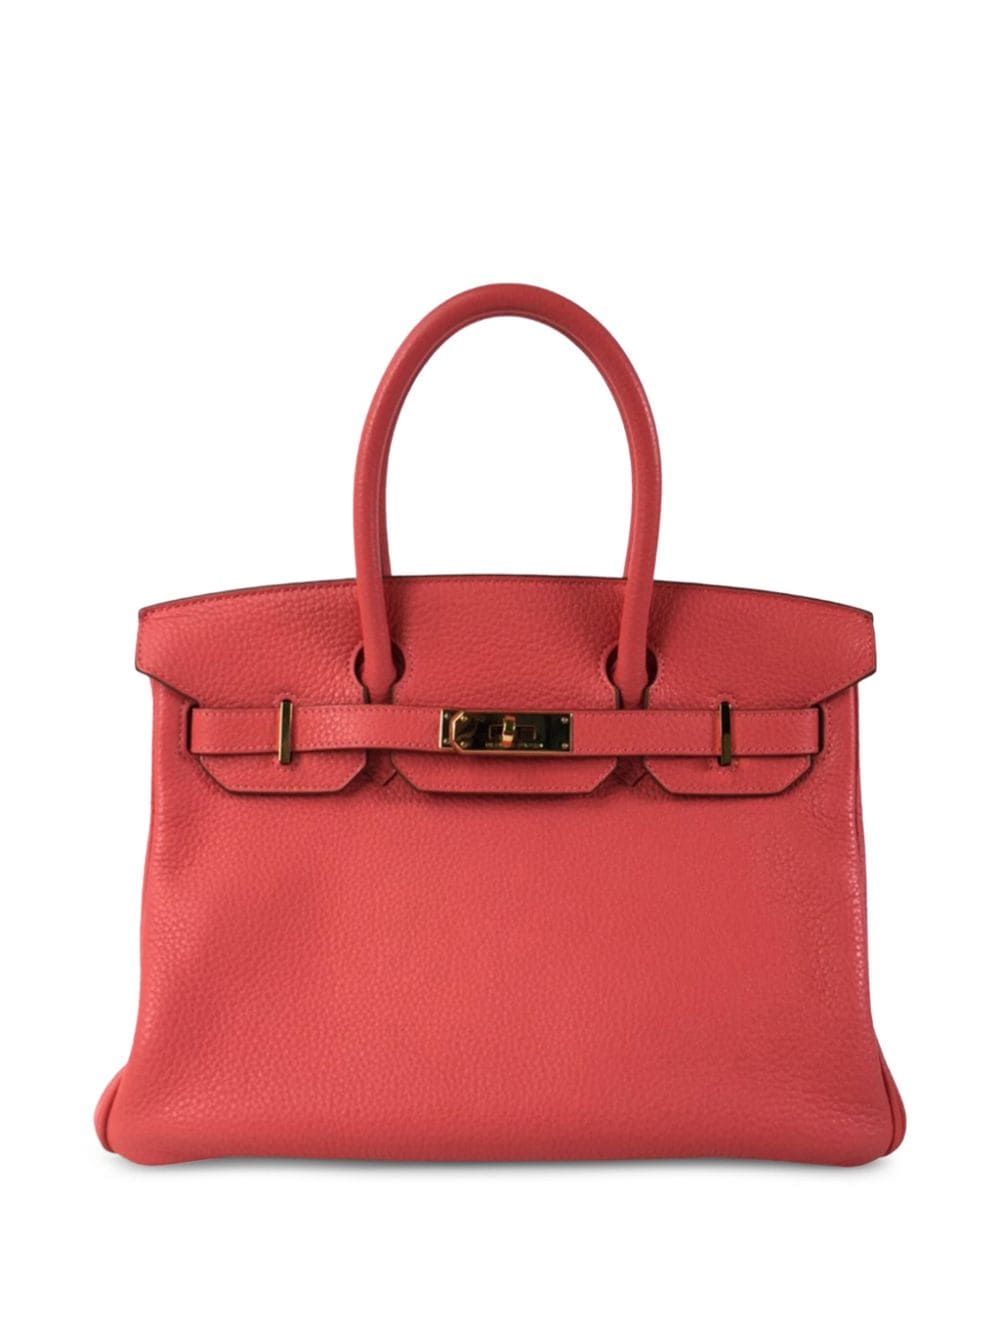 Pre-owned Hermes 2012 Birkin 30 Handbag In Pink